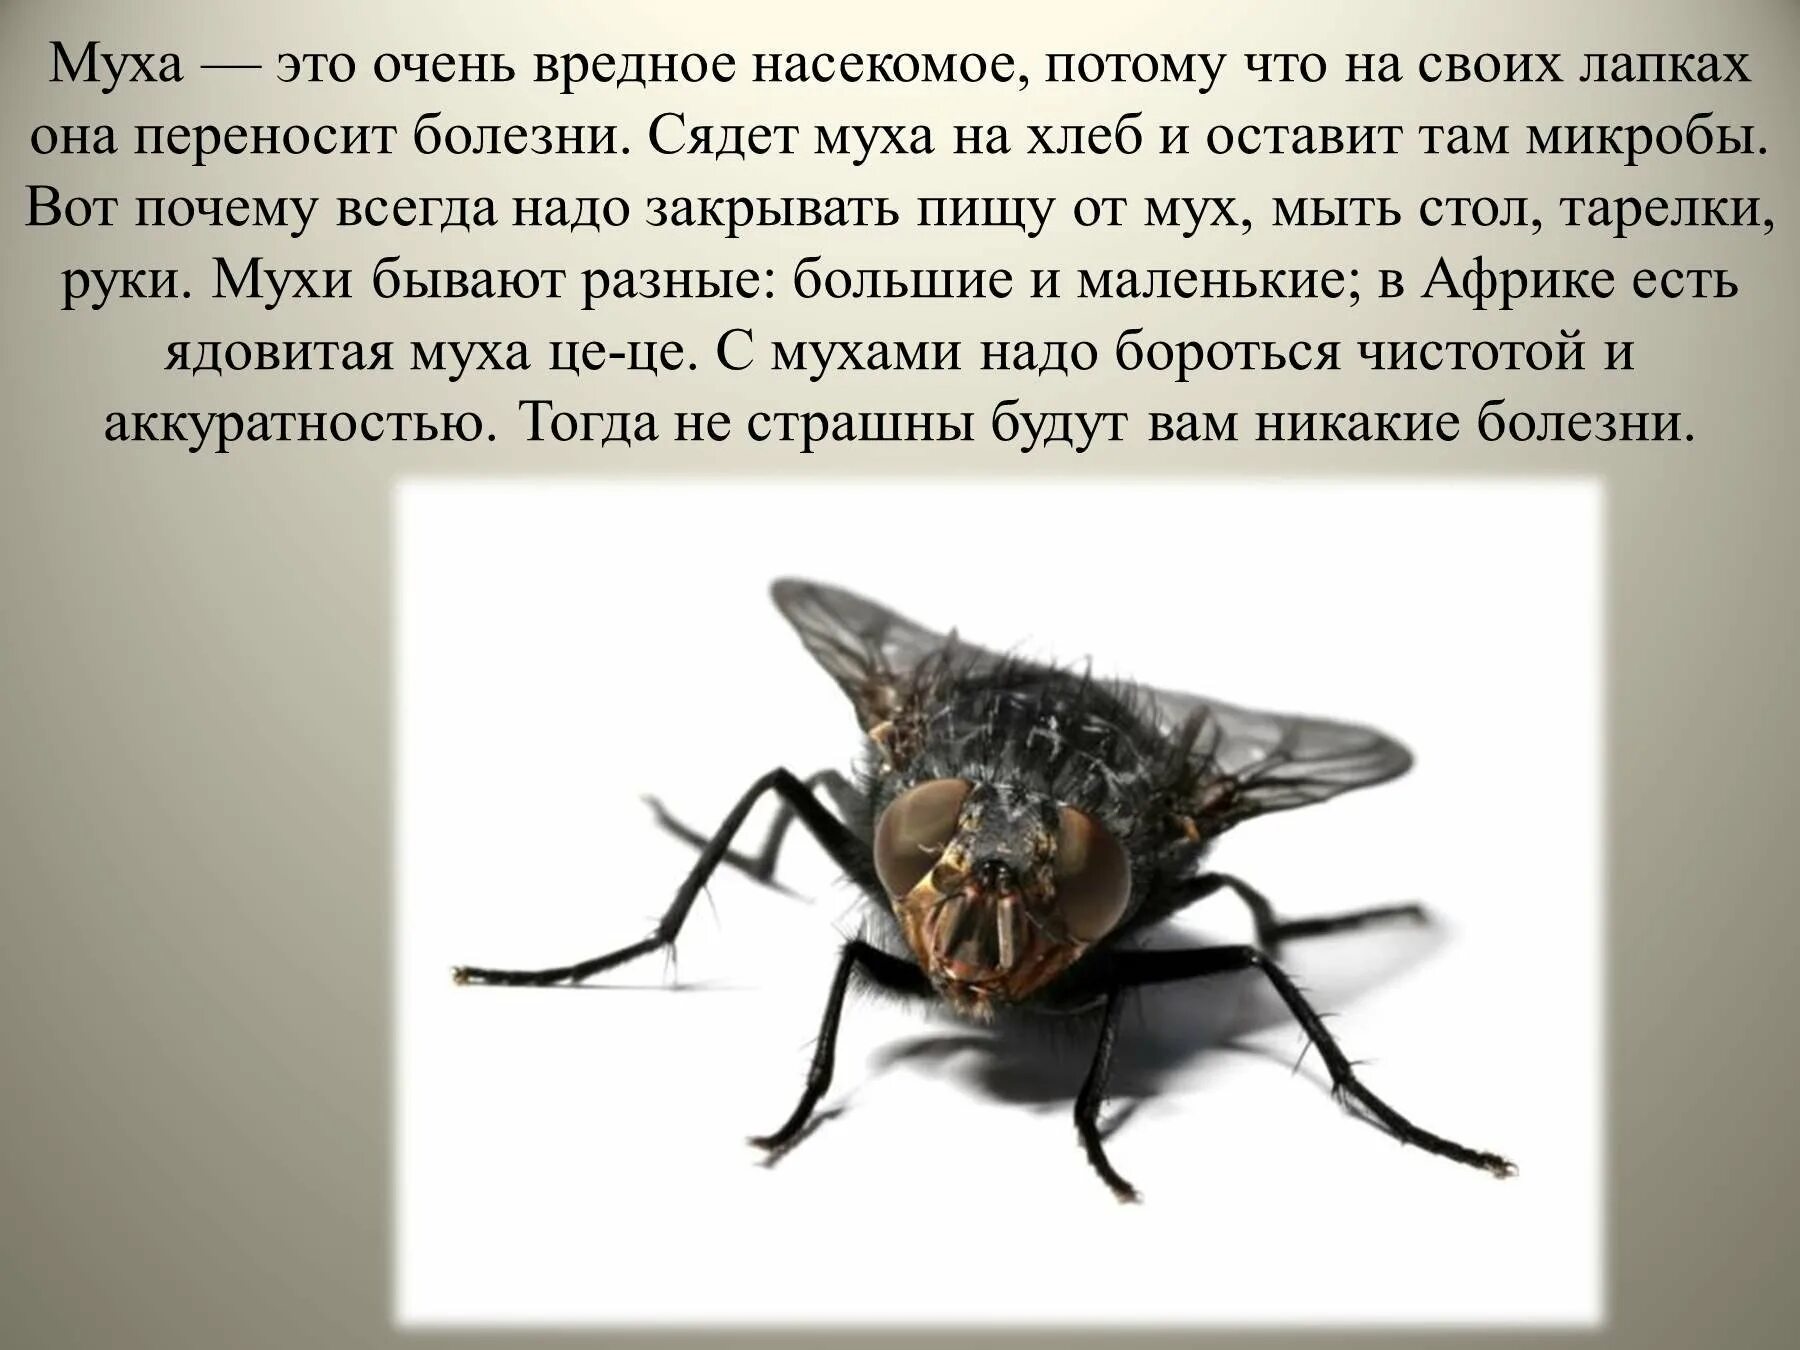 Опасна ли муха. Доклад про мух. Вредные насекомые. Сообщение про муху. Интересные факты о мухах.